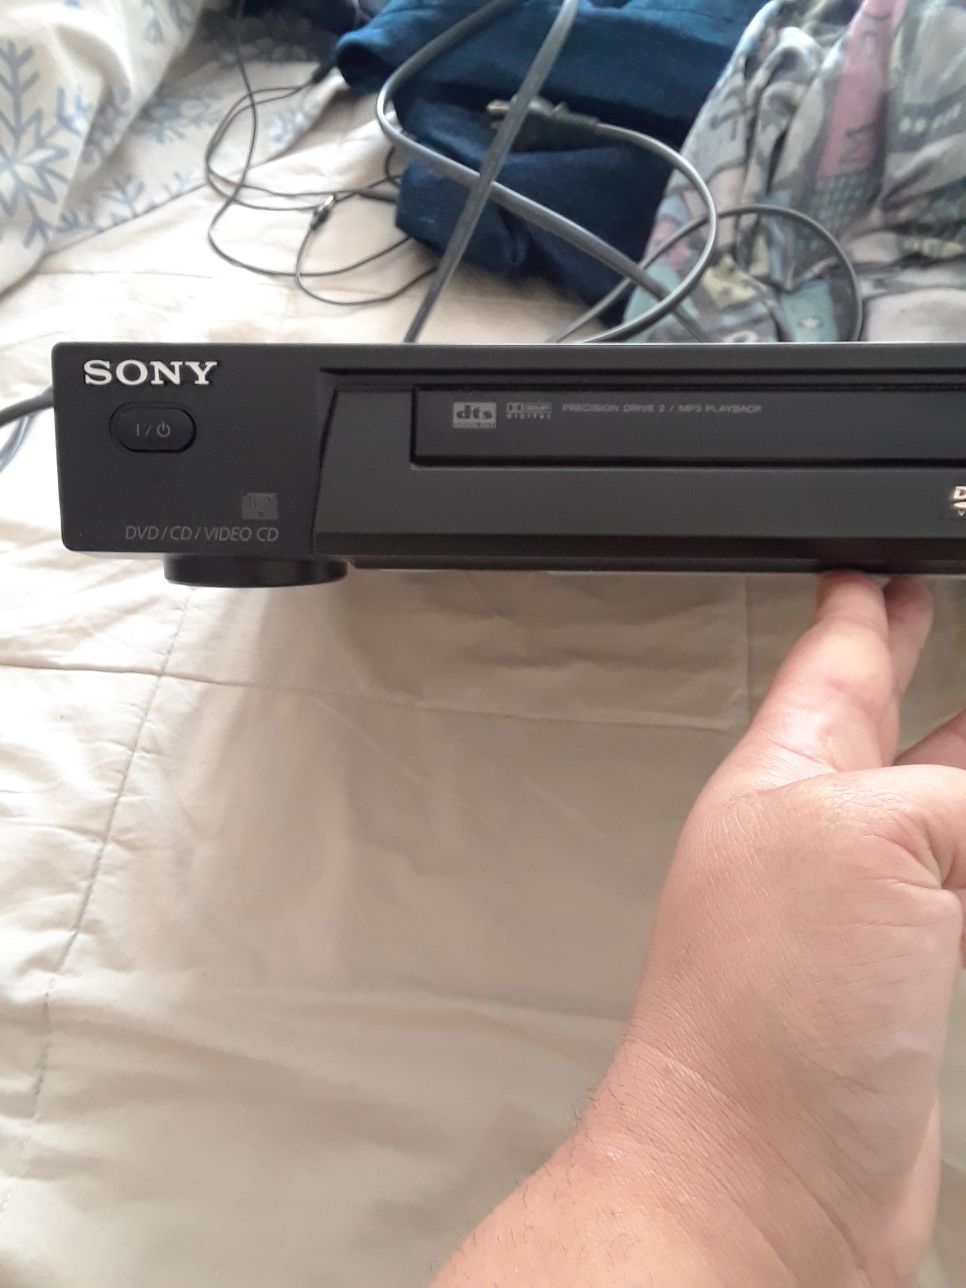 Sony dvd player.